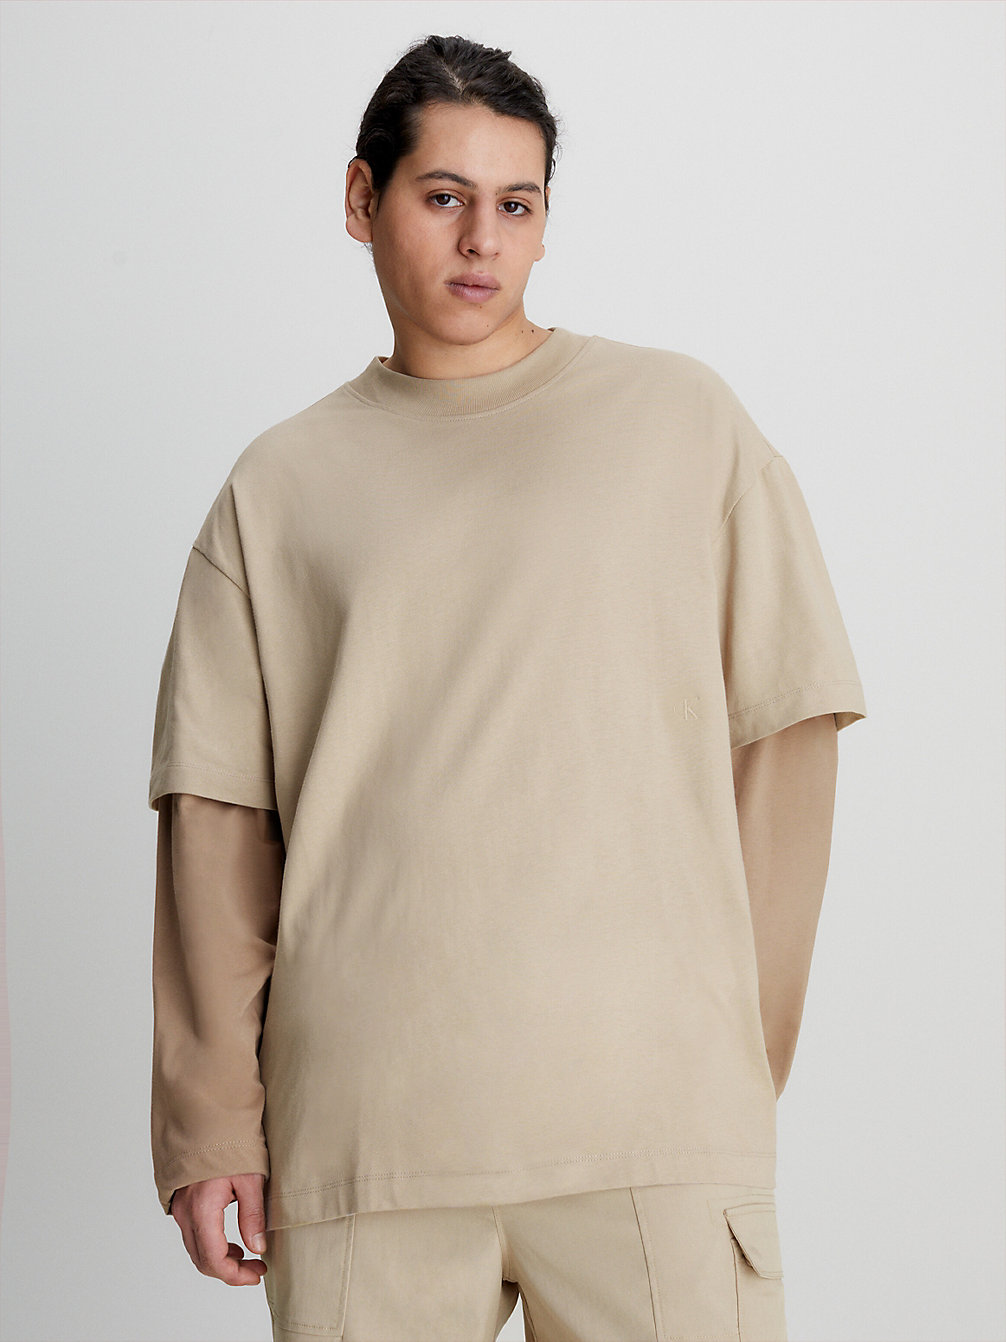 SOFT BEIGE Doppel-Layer Langärmliges T-Shirt undefined Herren Calvin Klein